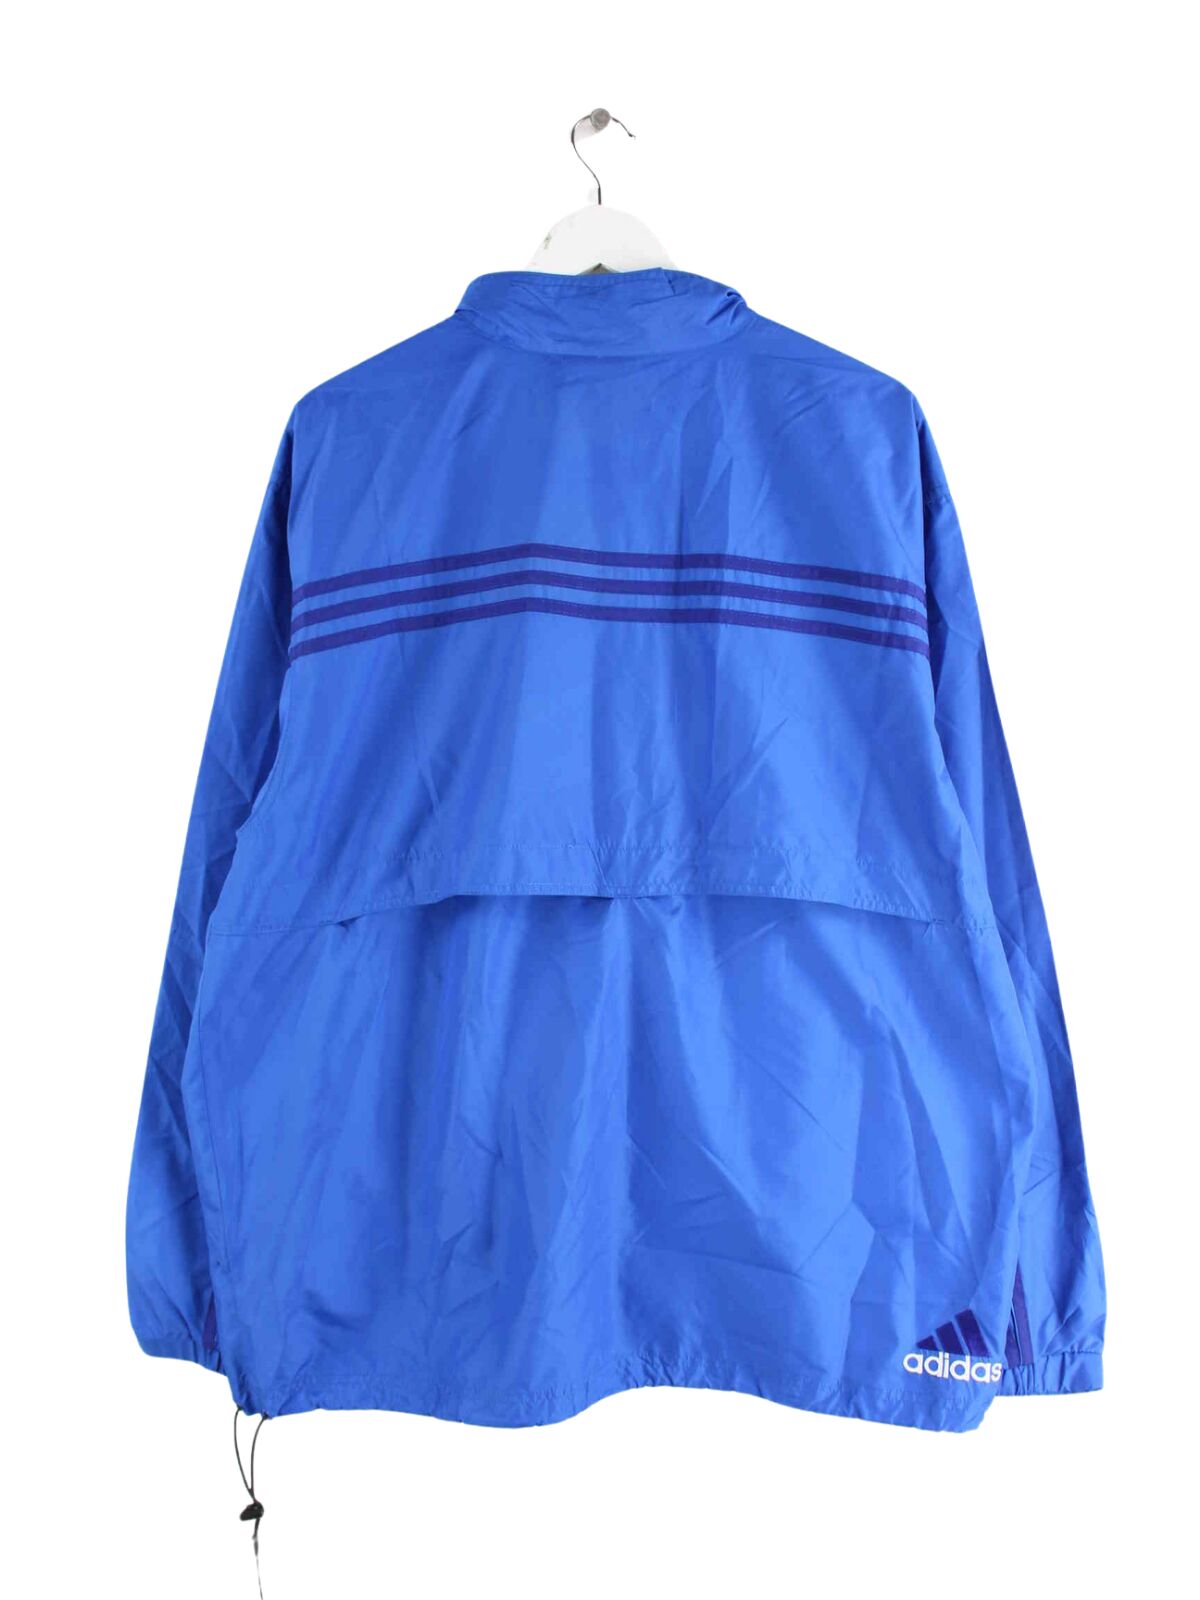 Adidas 90s Vintage Windbreaker Jacke Blau L (back image)